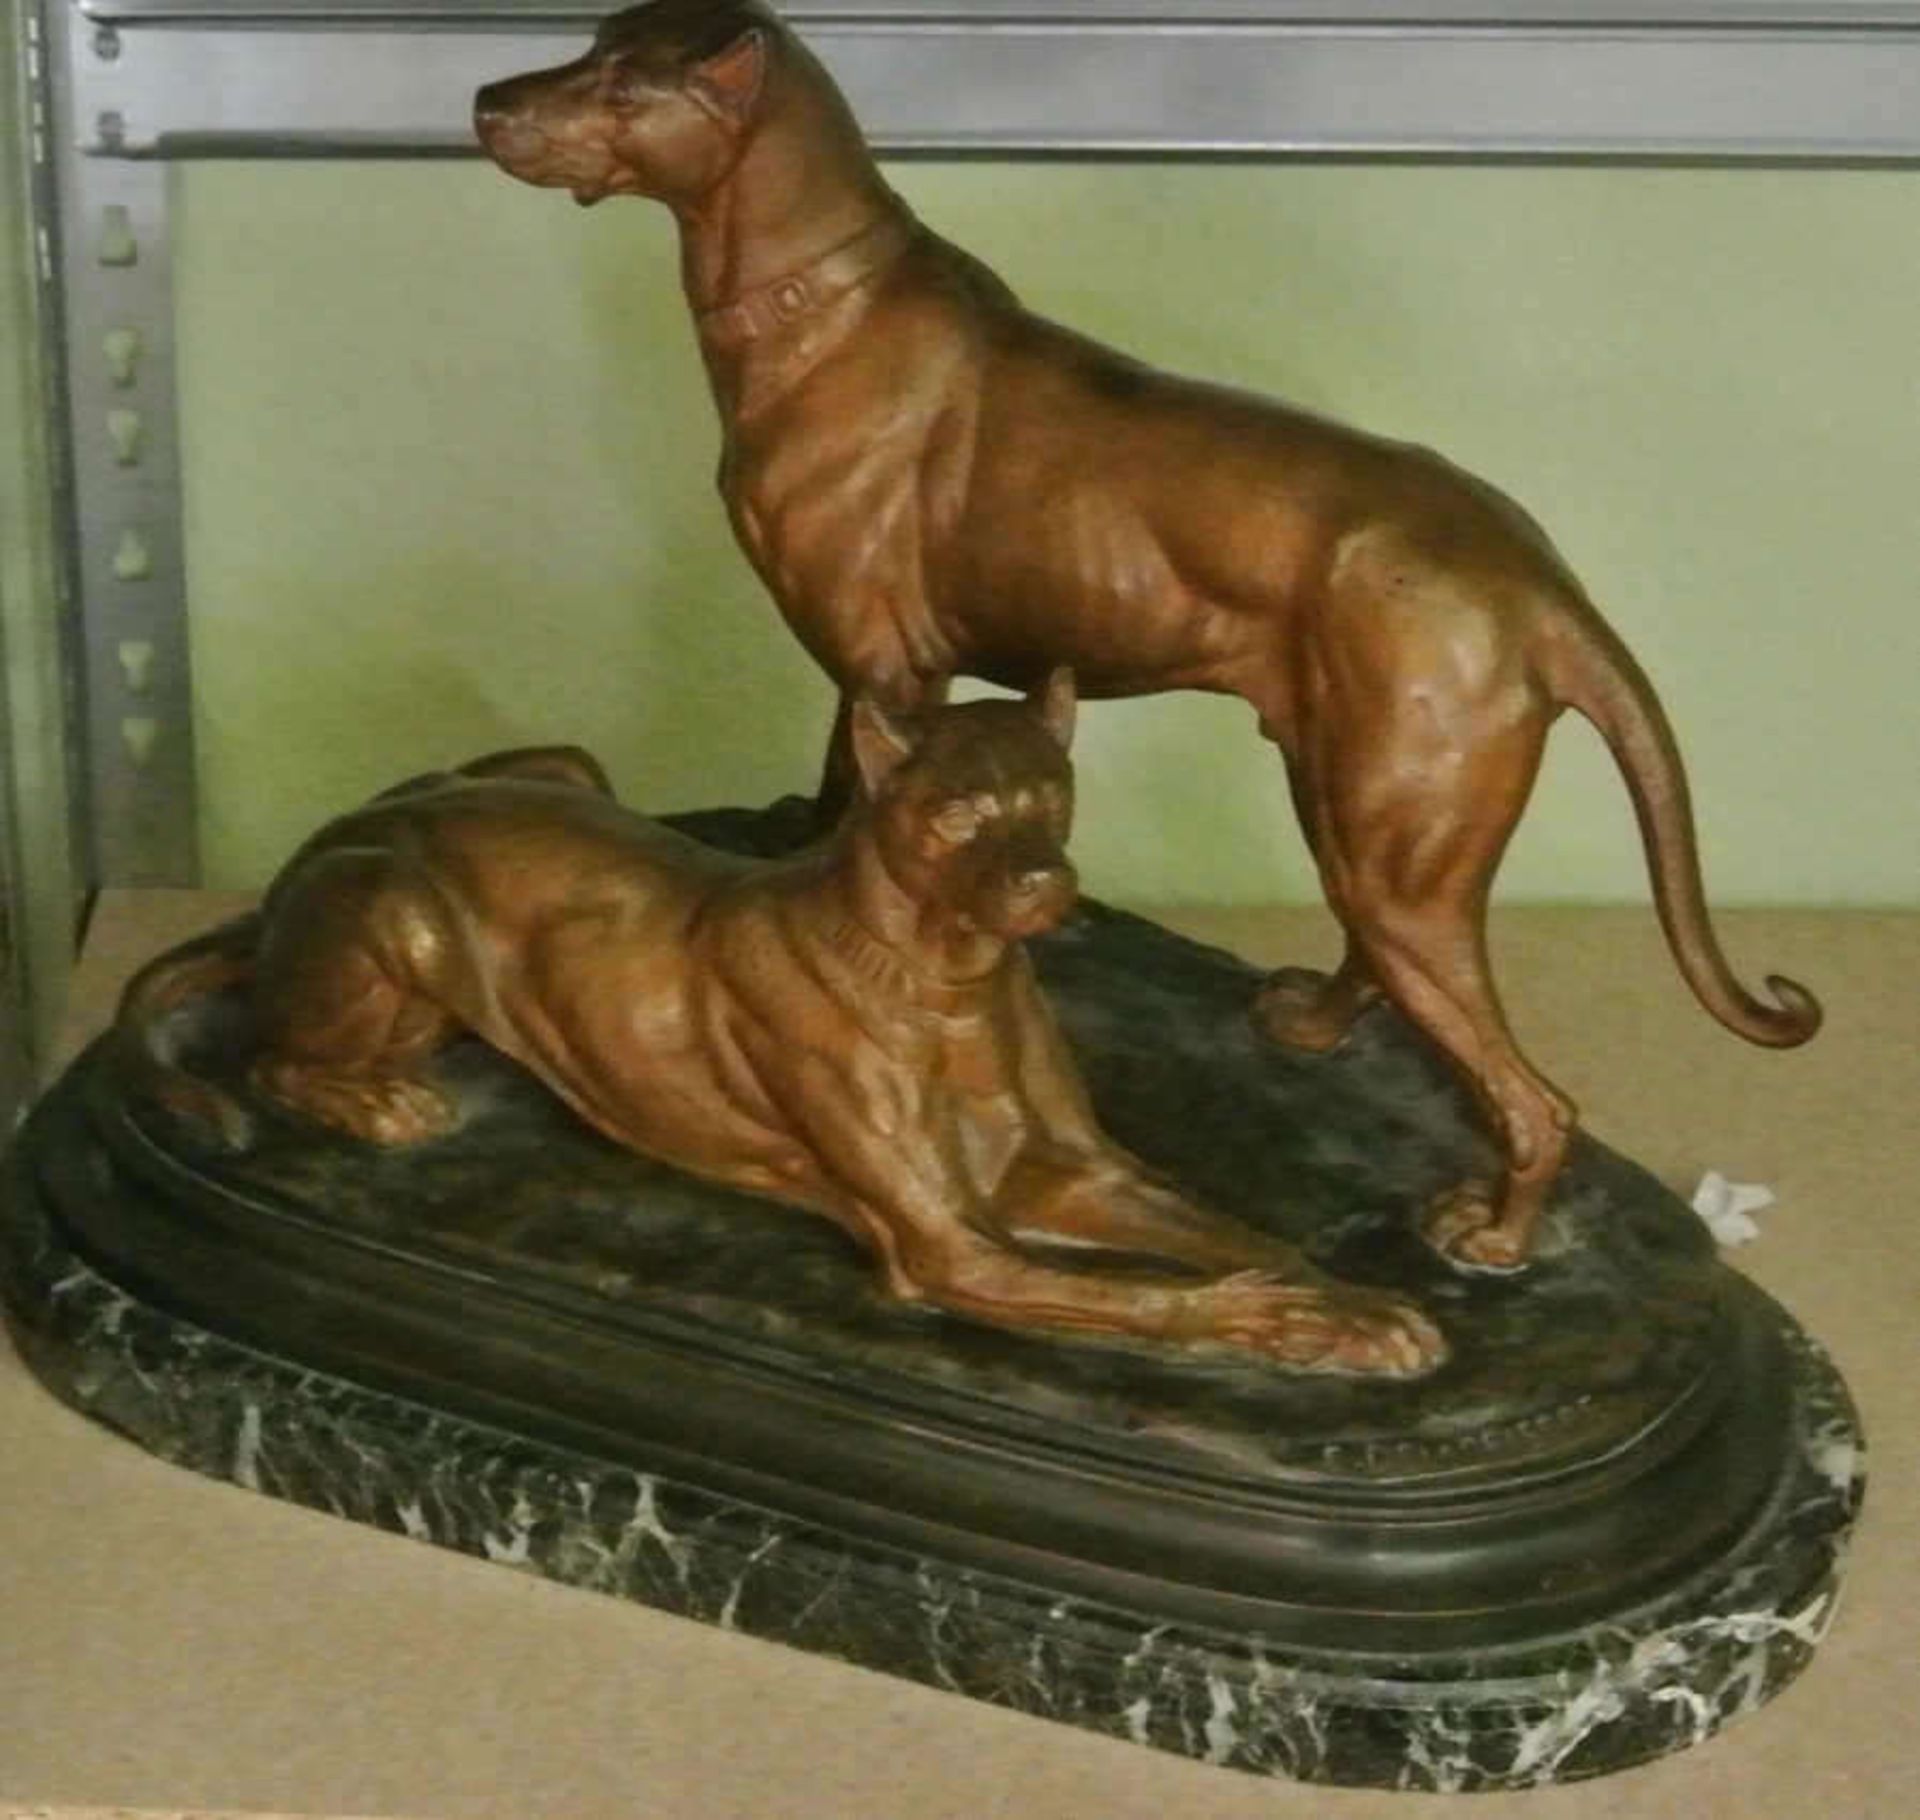 Paul-Edouard Delabrierre, große Bronzefigur "2 Doggen" eine Dogge stehend, 1 Dogge liegend, auf